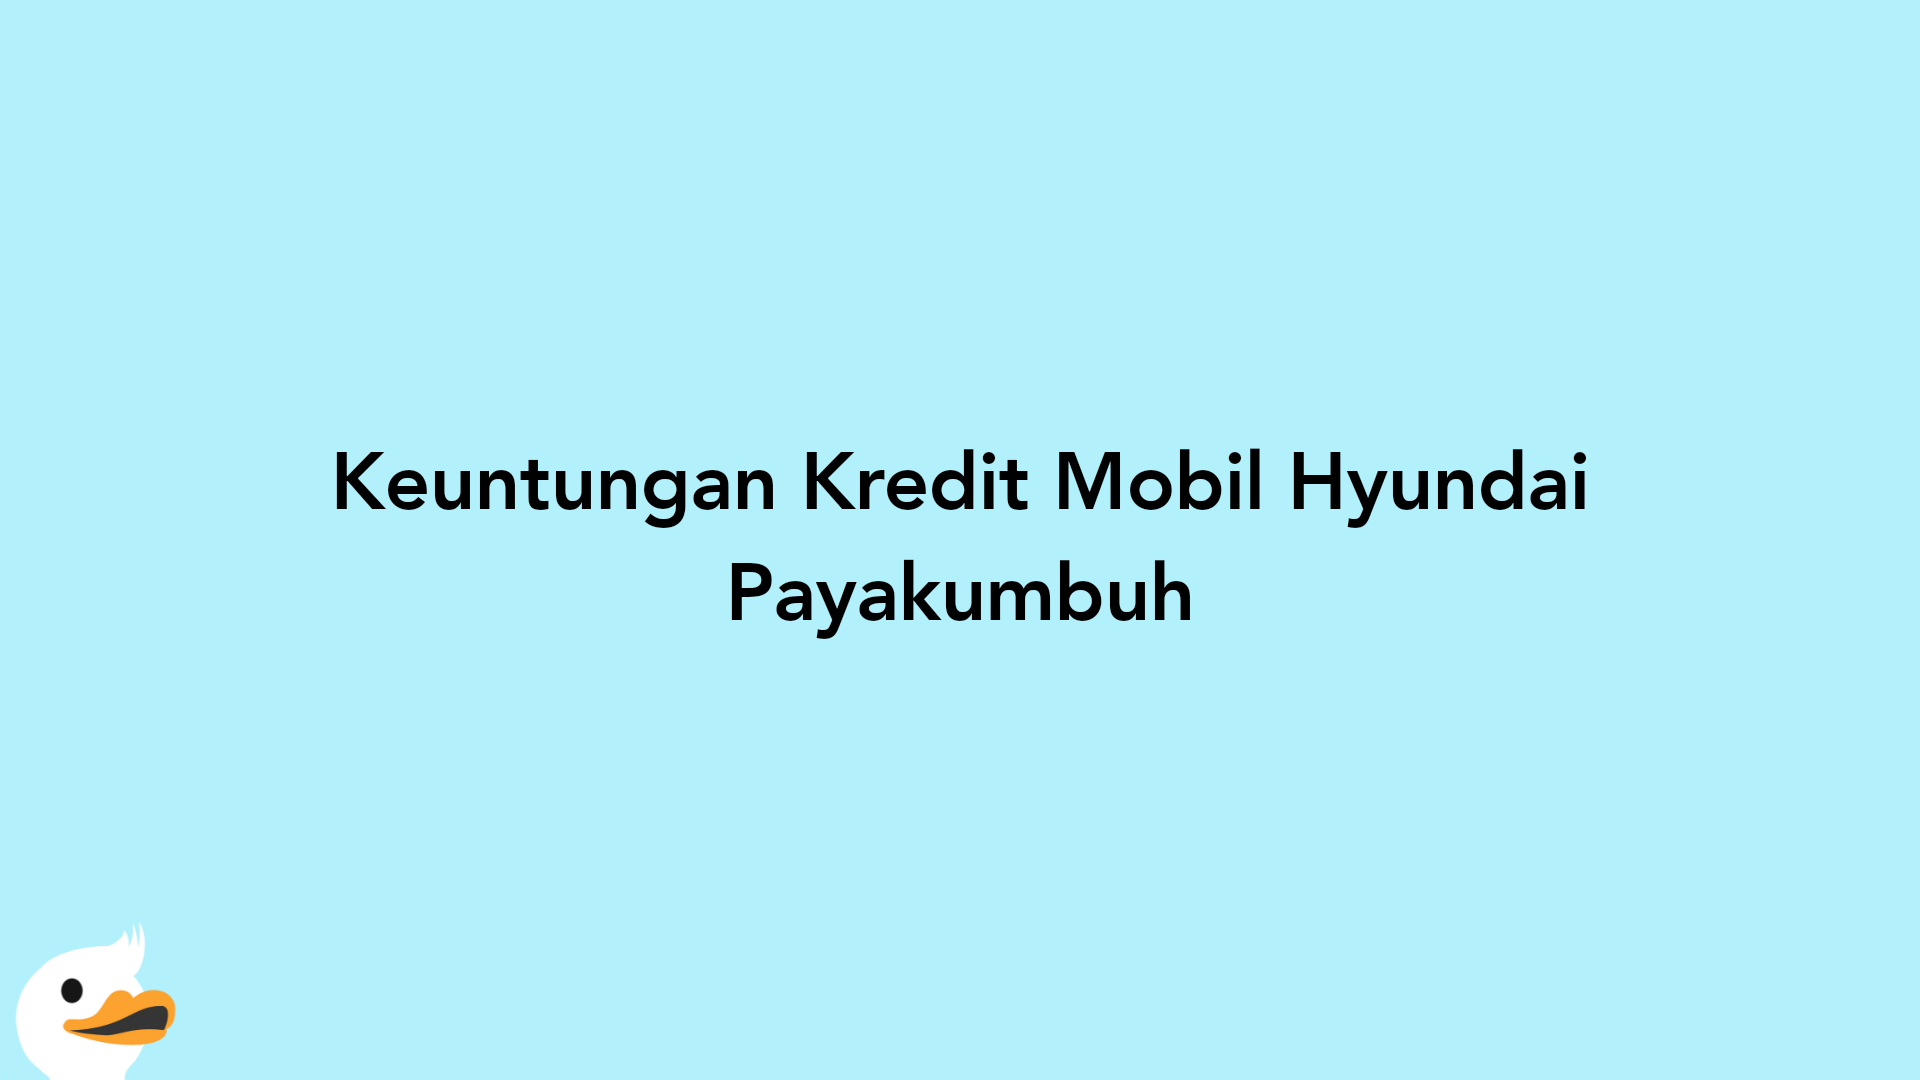 Keuntungan Kredit Mobil Hyundai Payakumbuh